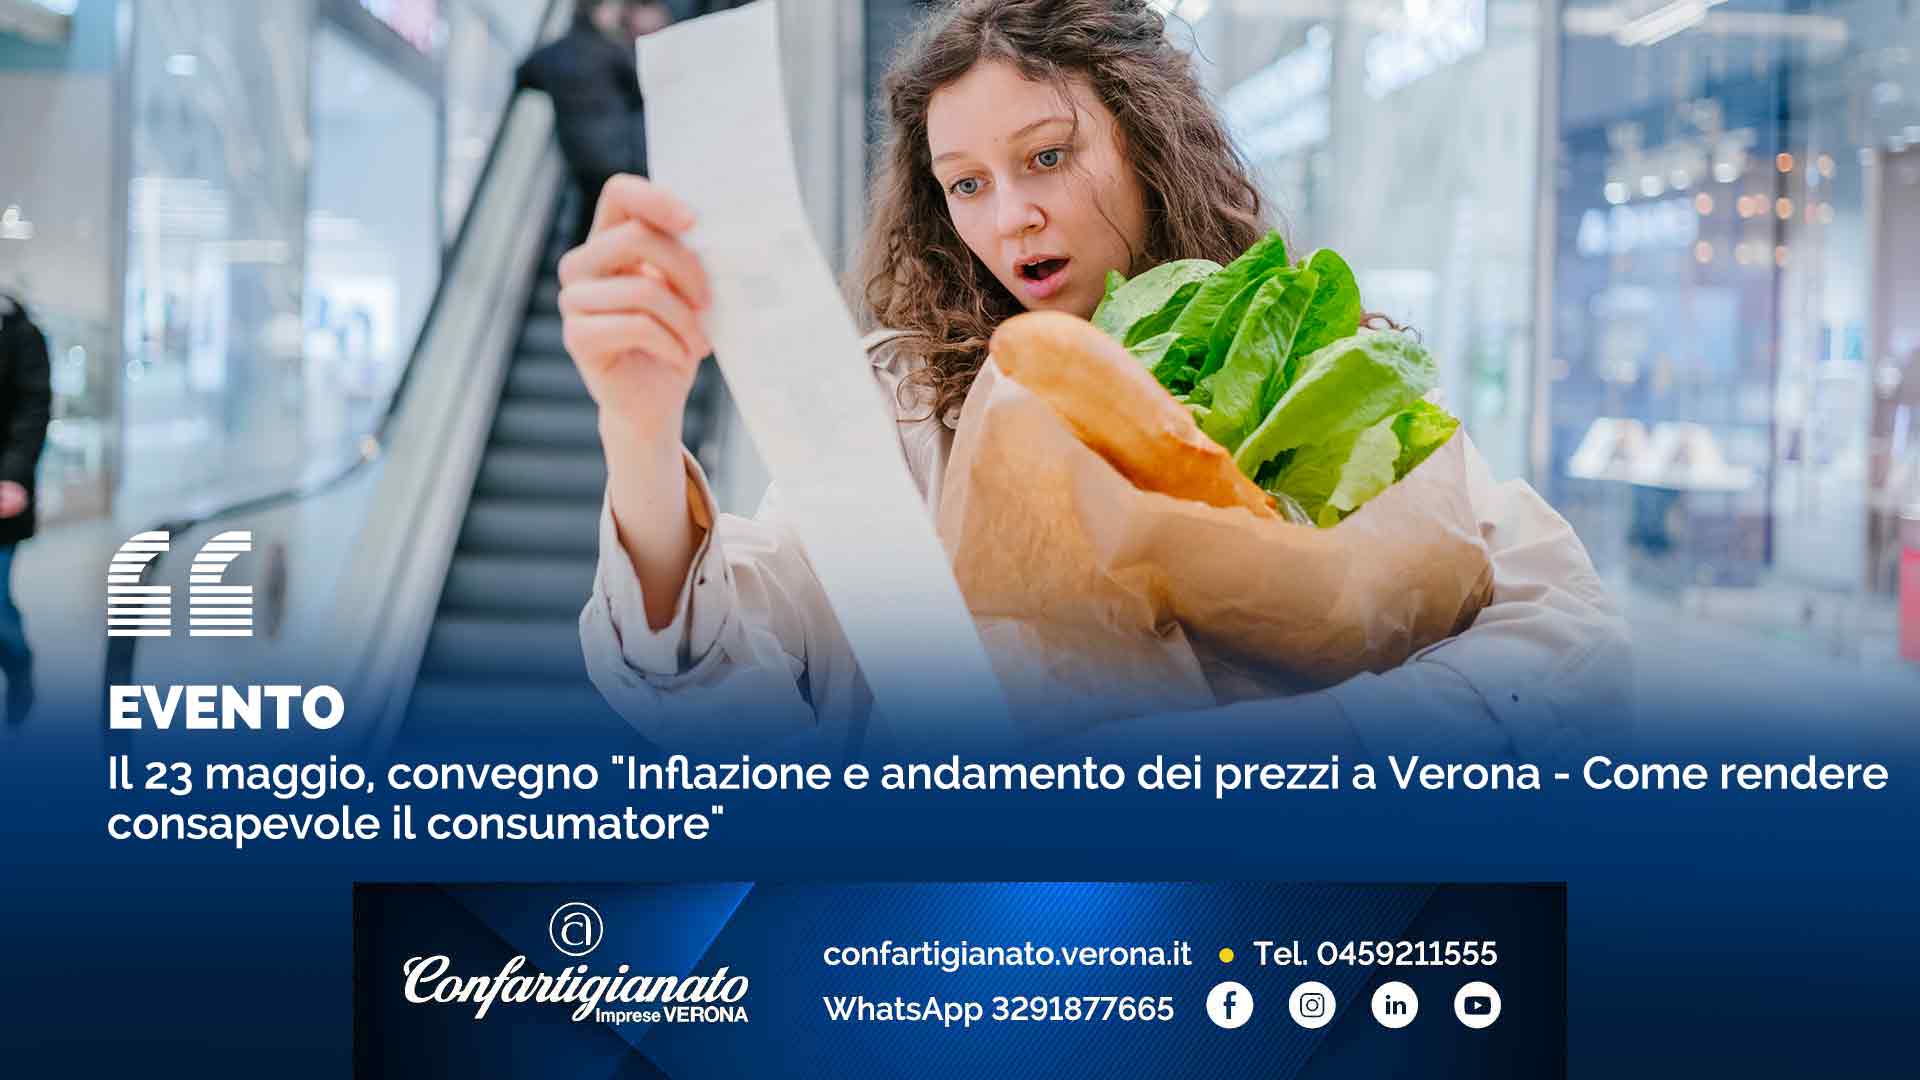 EVENTO – Il 23 maggio, convegno "Inflazione e andamento dei prezzi a Verona - Come rendere consapevole il consumatore"